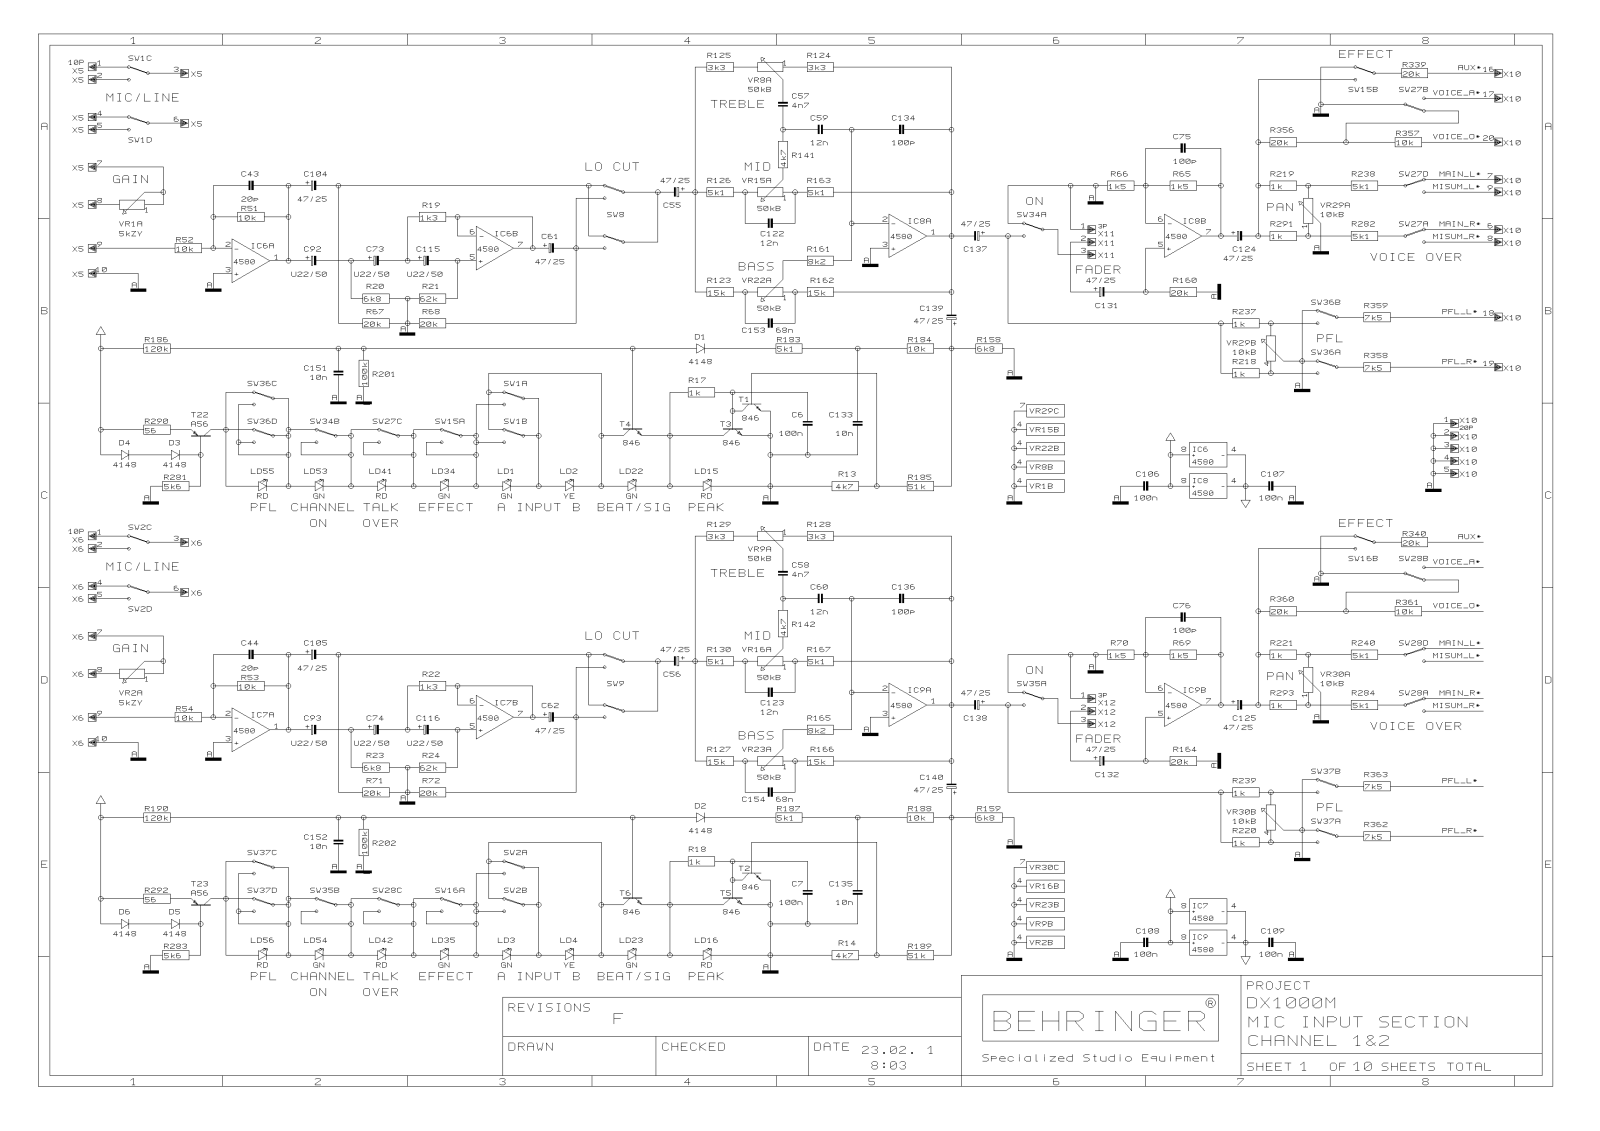 behringer mx8000 power supply schematic